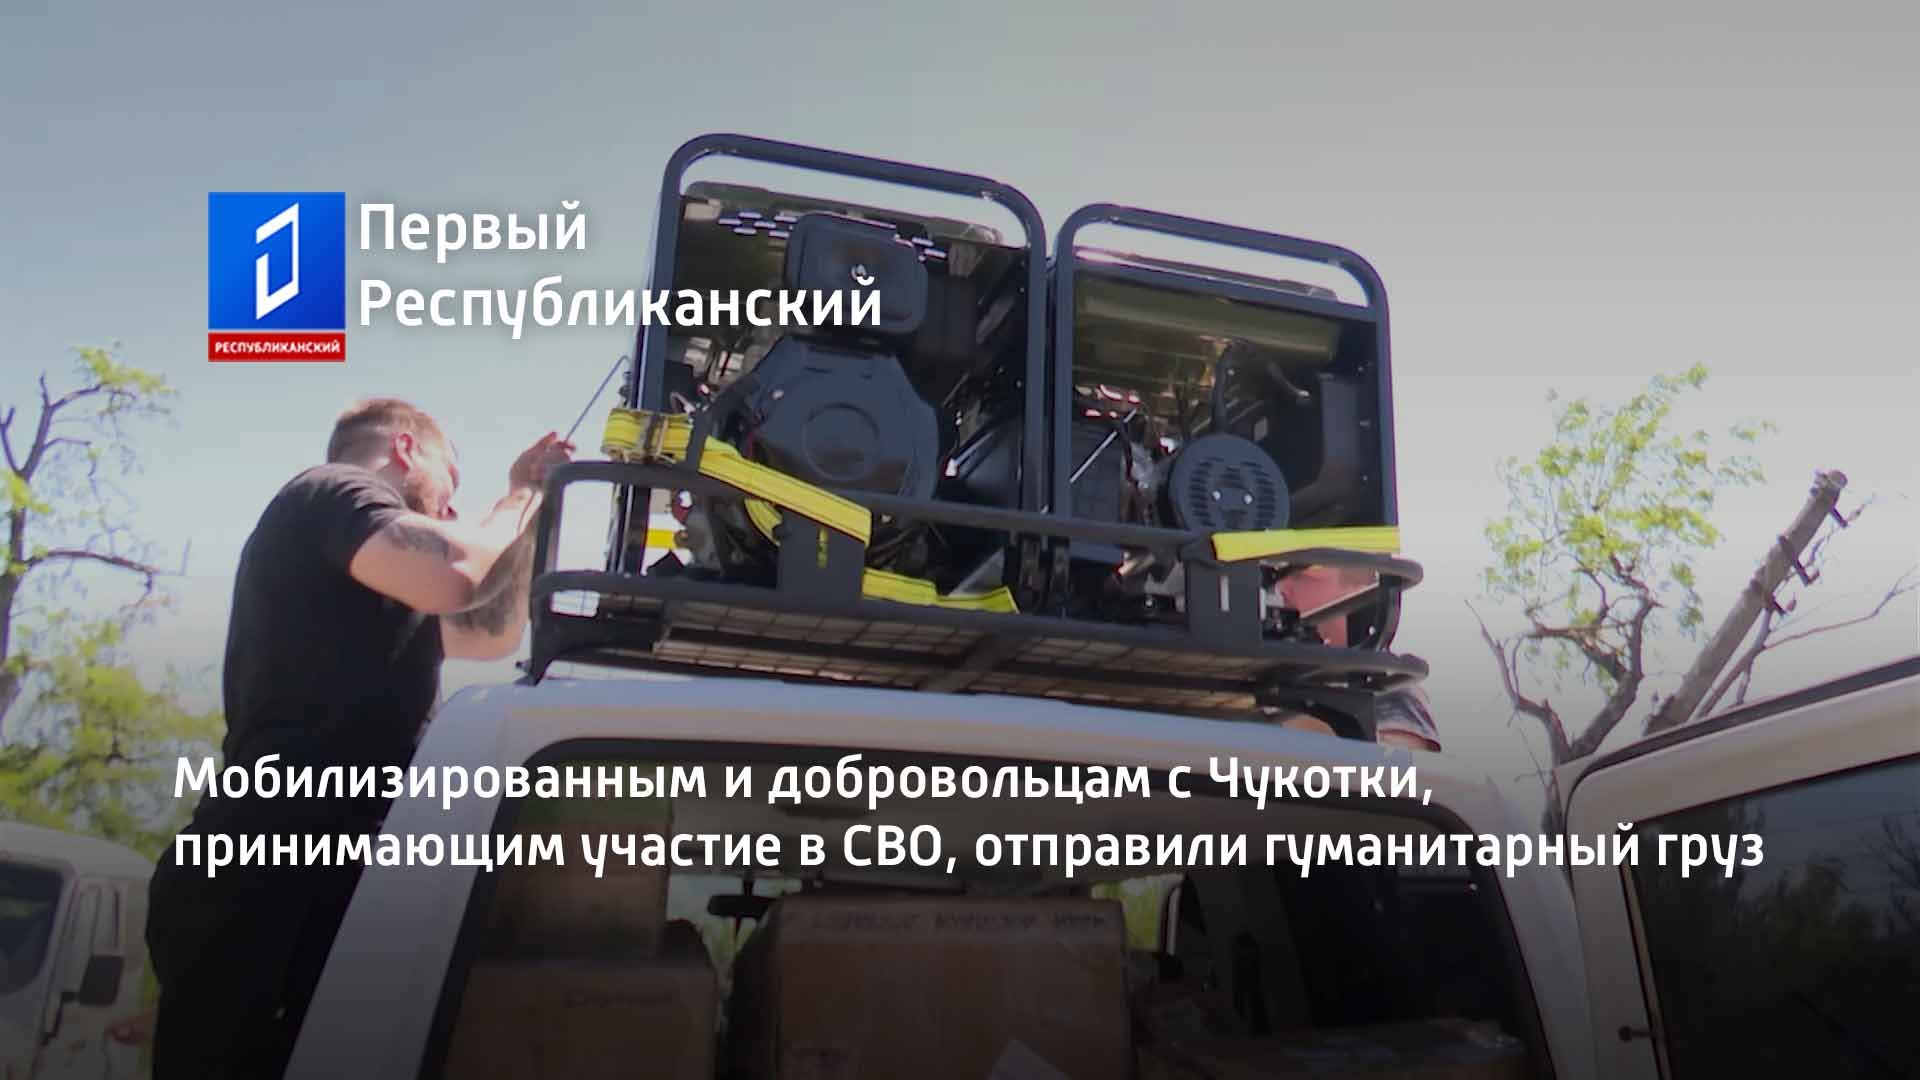 Мобилизированным и добровольцам с Чукотки, принимающим участие в СВО, отправили гуманитарный груз